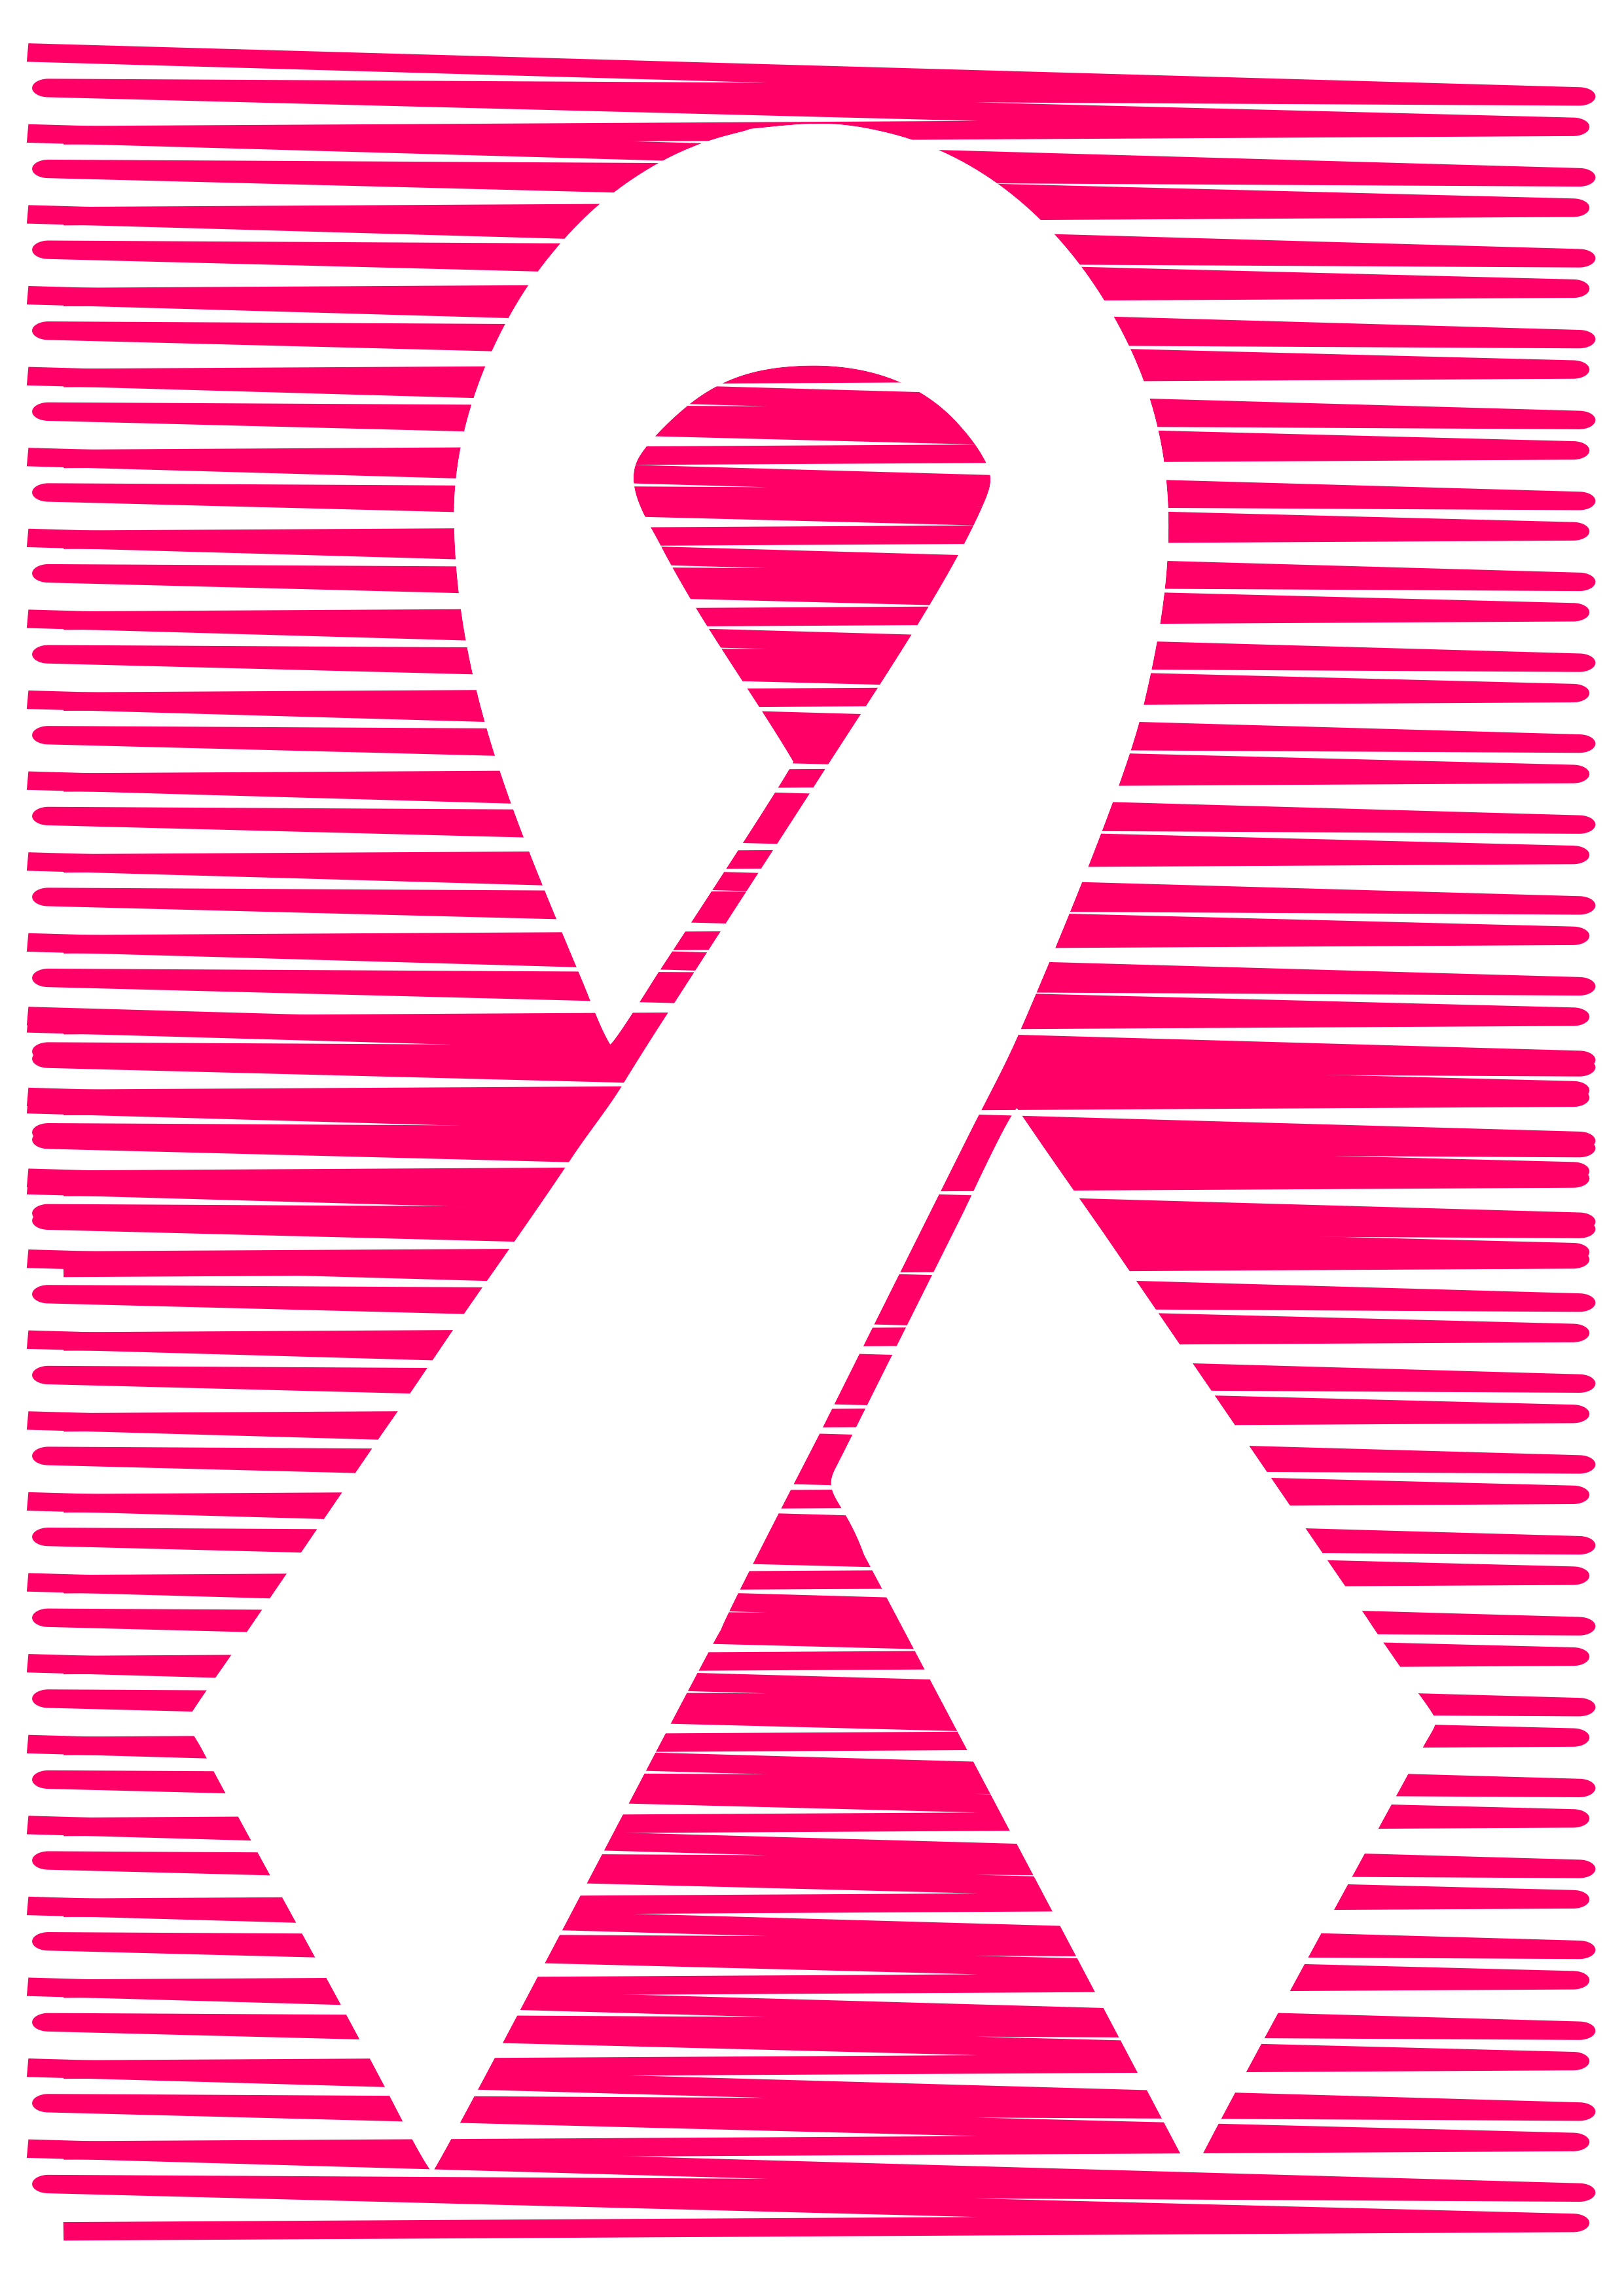 Outubro rosa mês de prevenção ao câncer de mama lacinho de fita artes gráficas rabiscado png